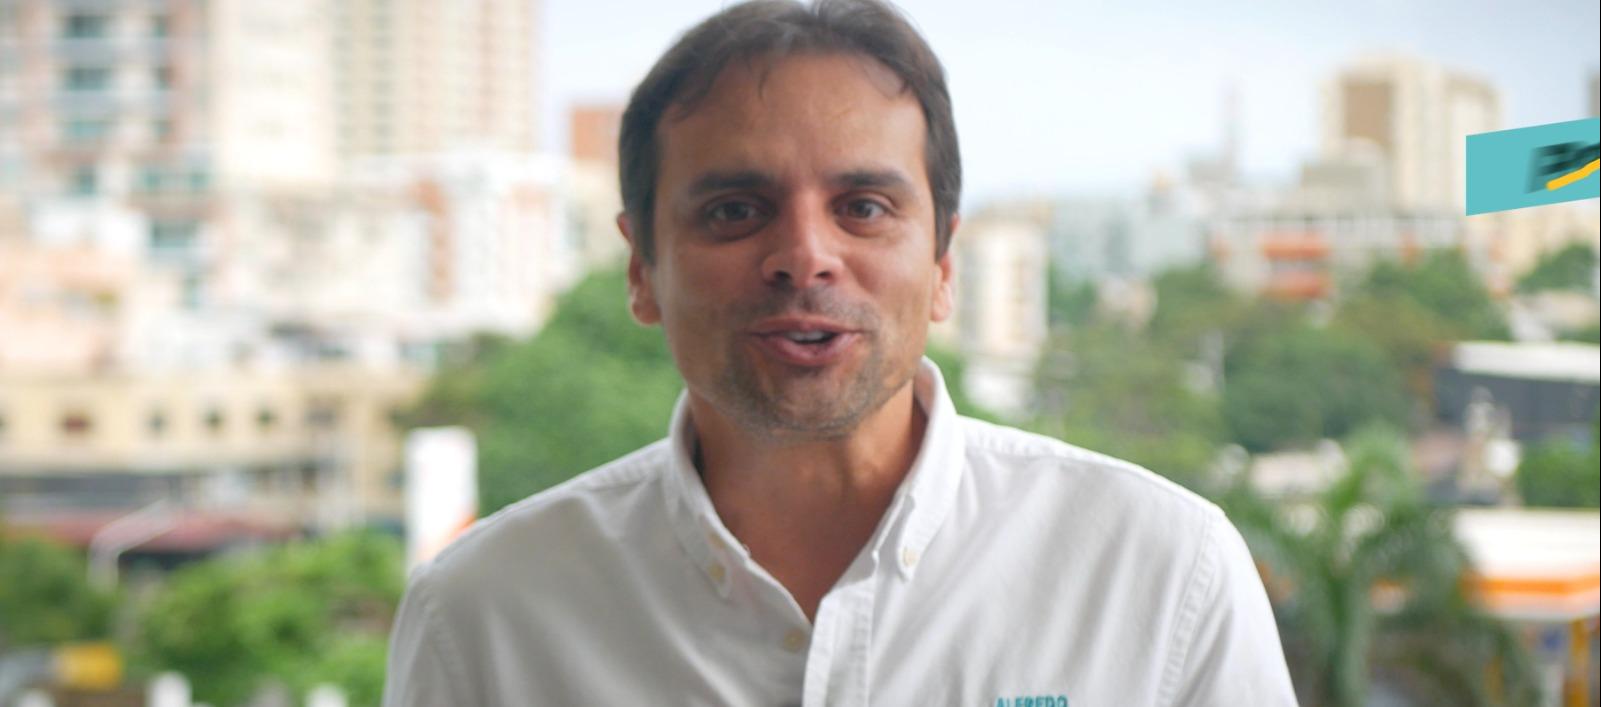 Alfredo Varela, candidato a la Gobernación del Atlántico